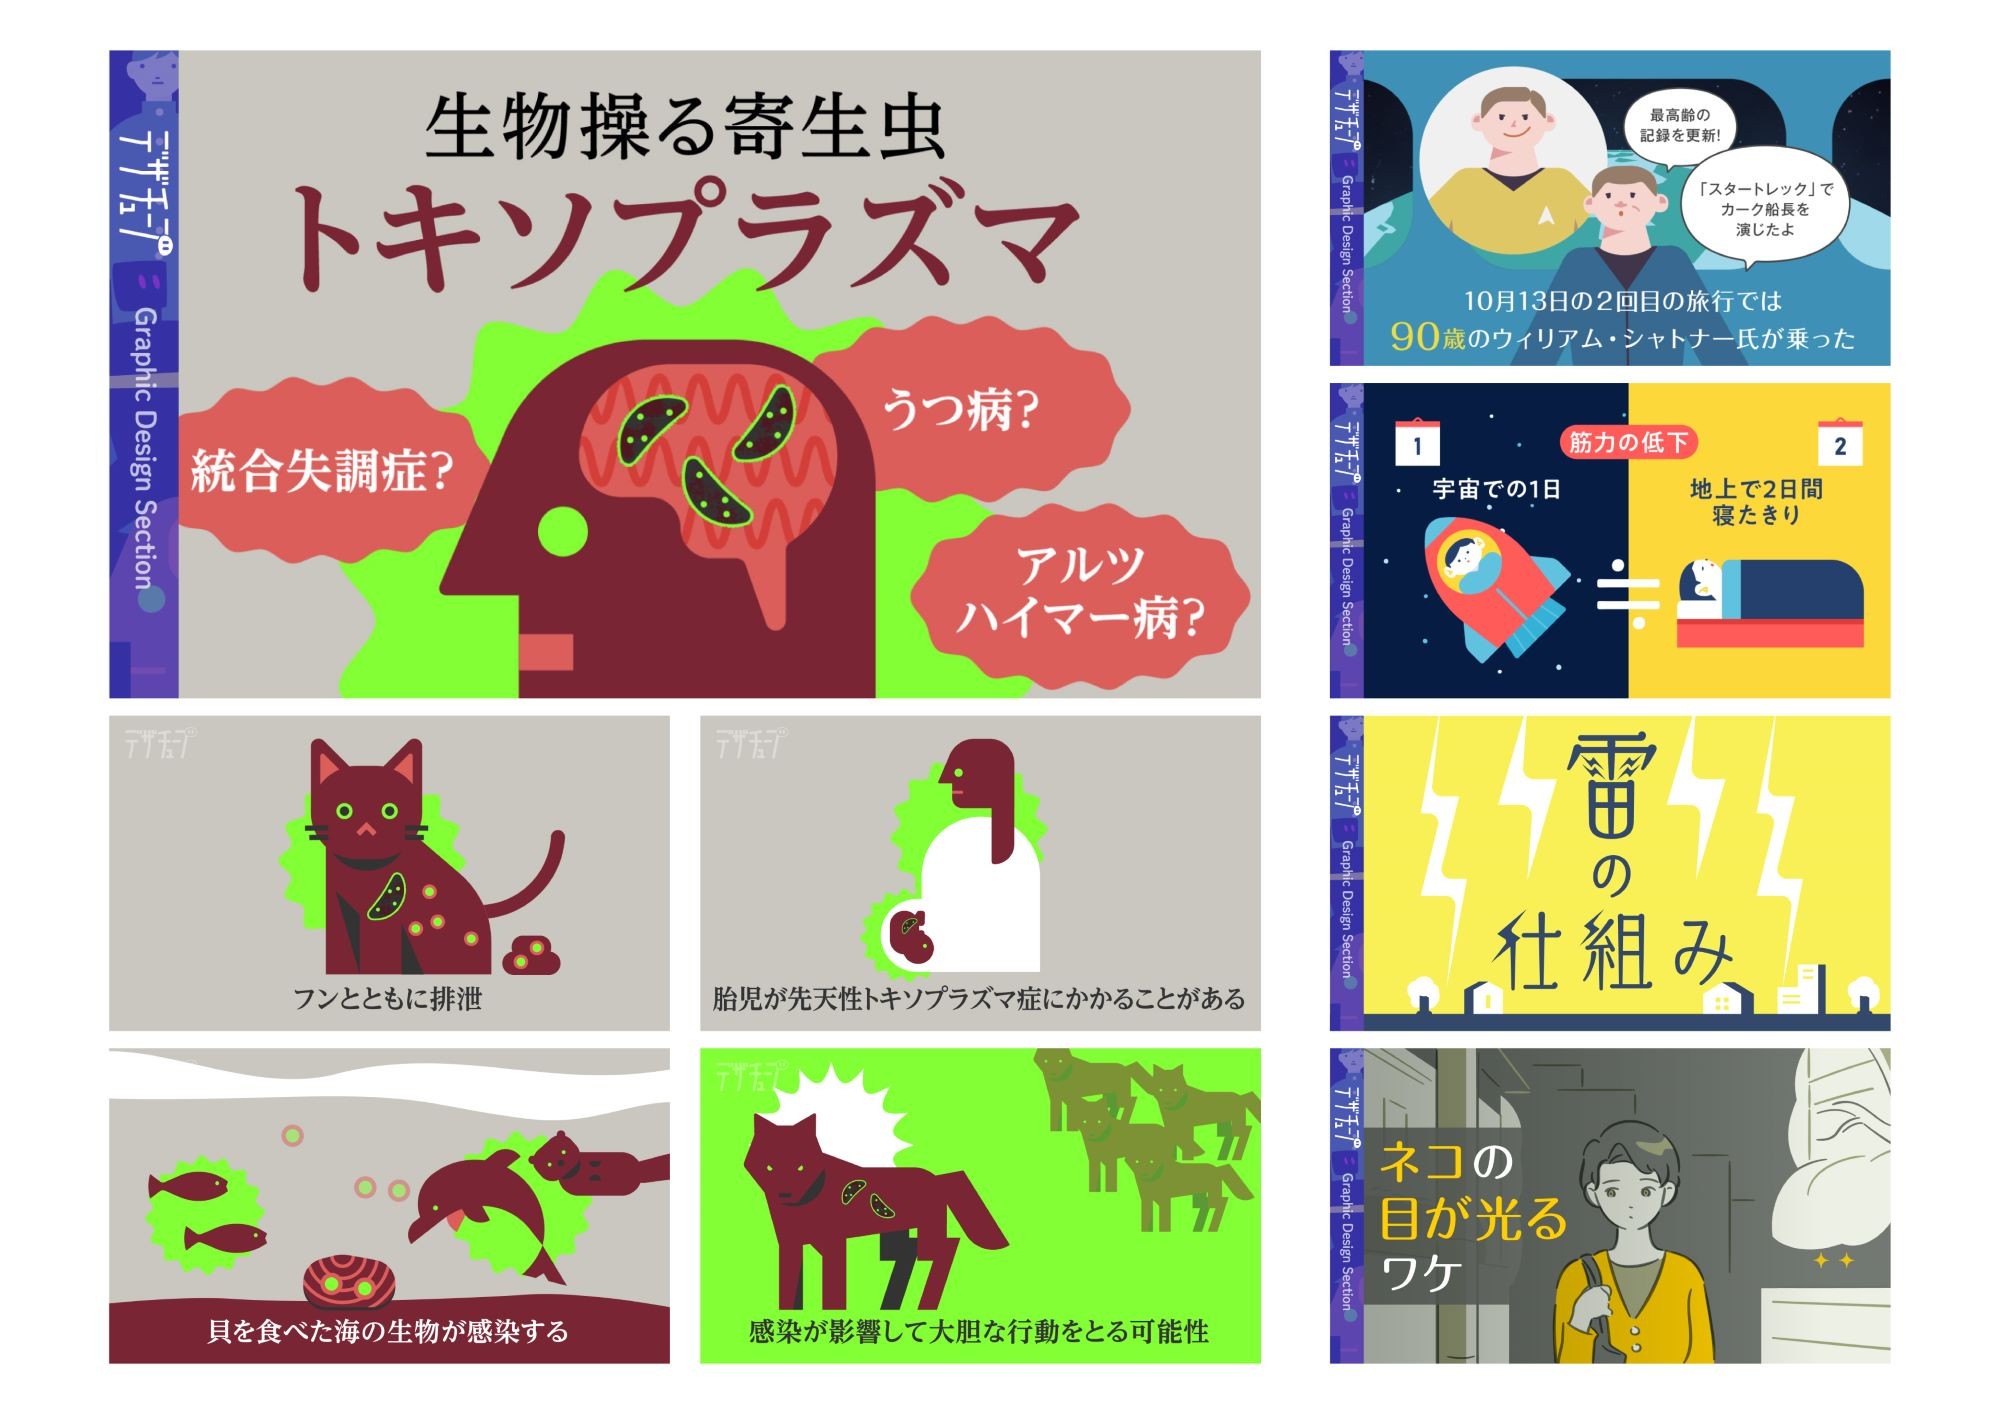 朝日新聞デザイン部の公式YouTubeチャンネル「デザチューブ」の解説動画